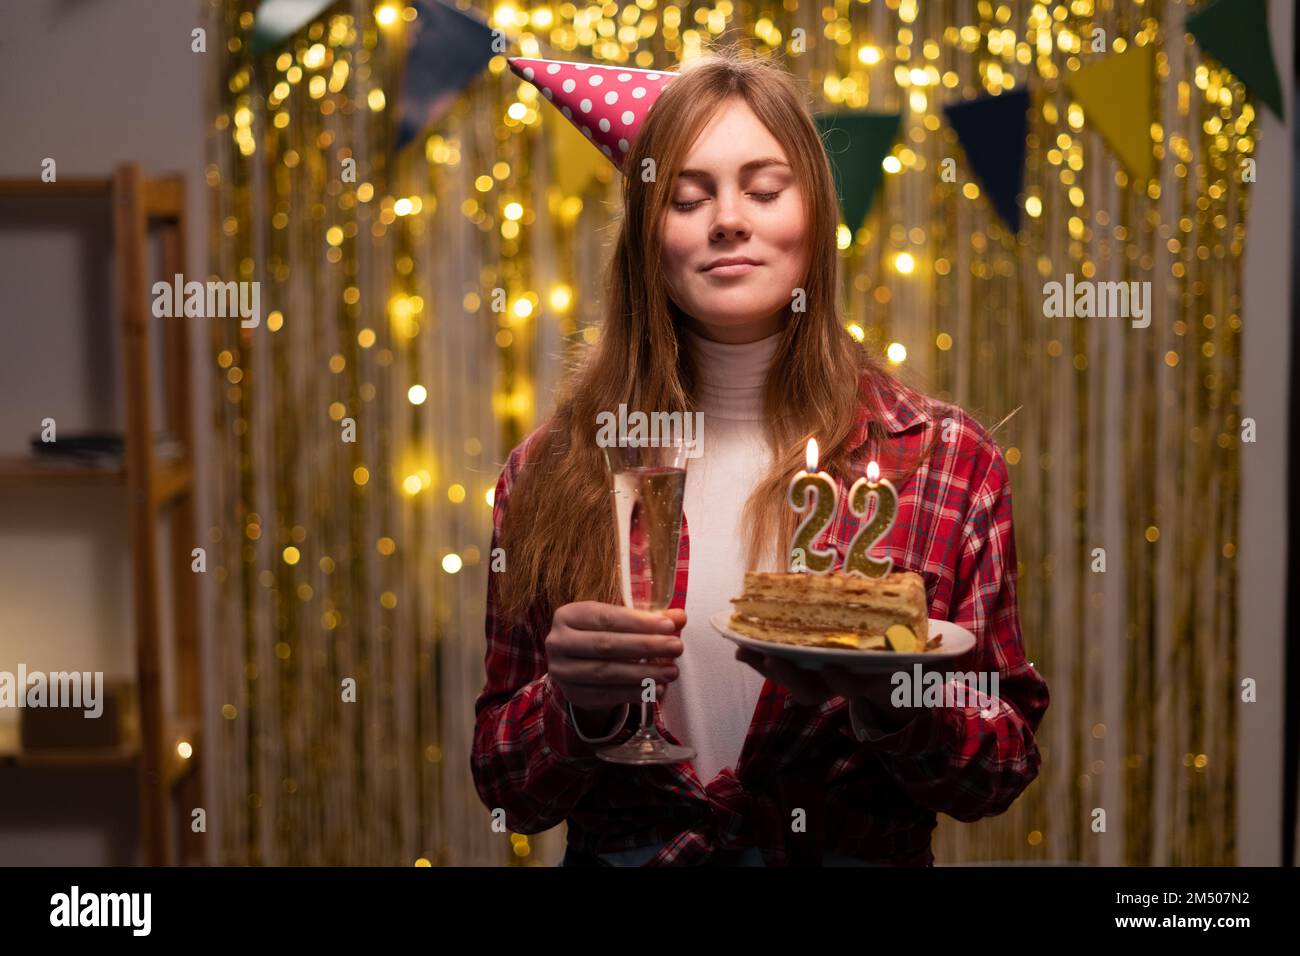 Geburtstagsfeier. Ein weißes Mädchen wünscht sich etwas, indem sie die Augen schließt und einen Geburtstagskuchen mit Kerzen Nummer 22 in der Hand hält. Speicherplatz kopieren Stockfoto